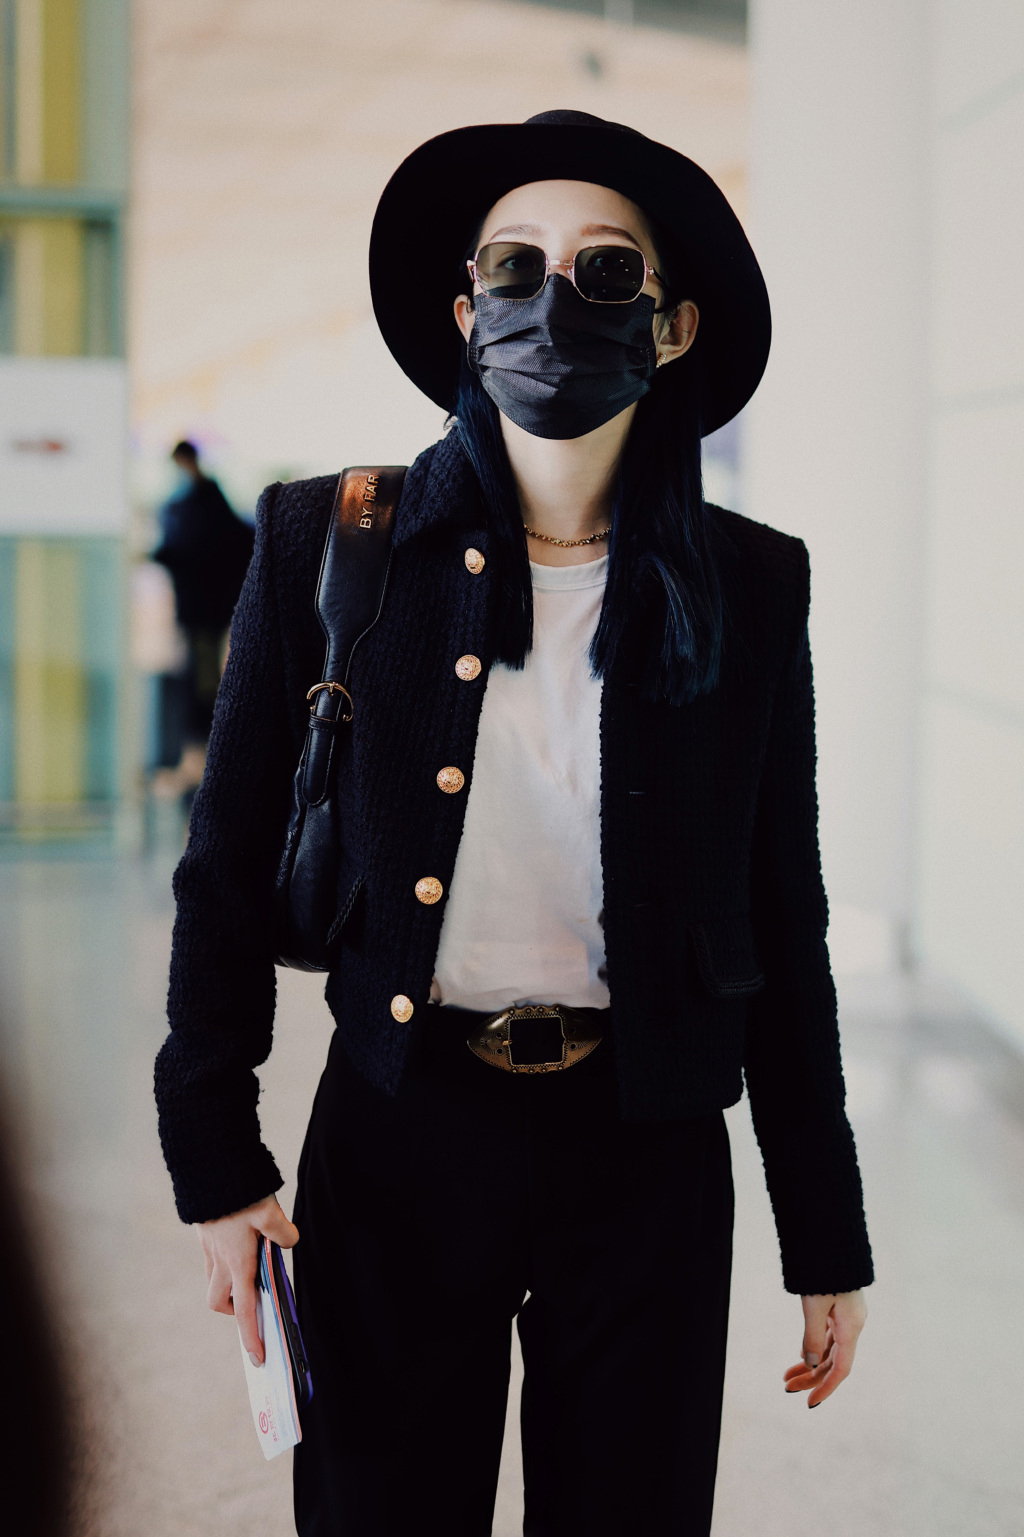 简介:孟美岐黑色装扮酷飒机场照图片,分享一组孟美岐图片给大家,图中